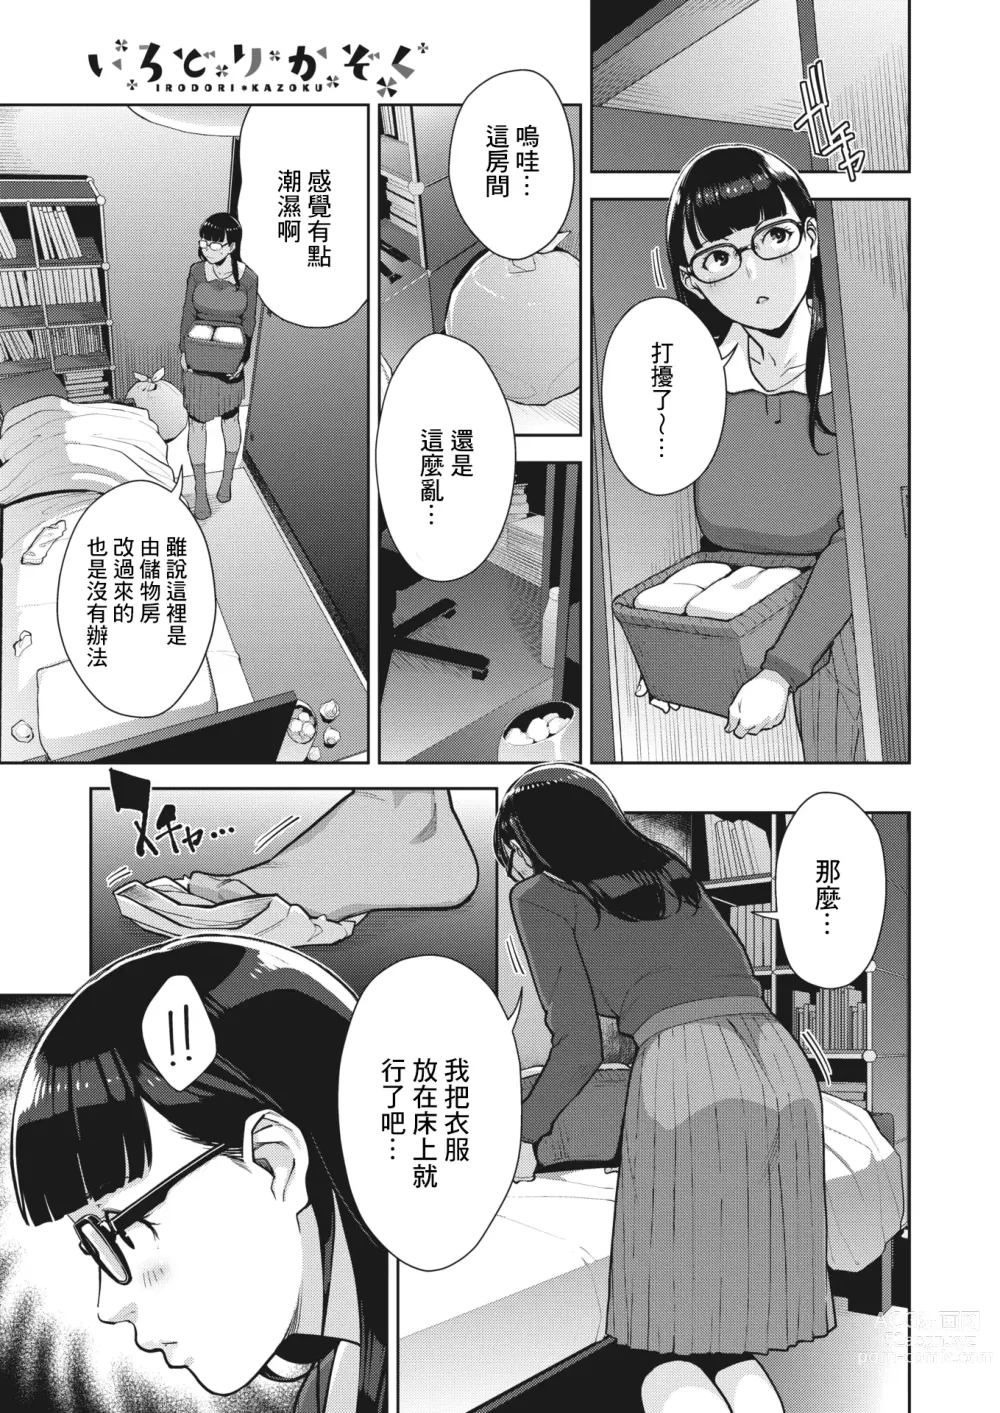 Page 31 of manga Irodori Kazoku Ch. 2